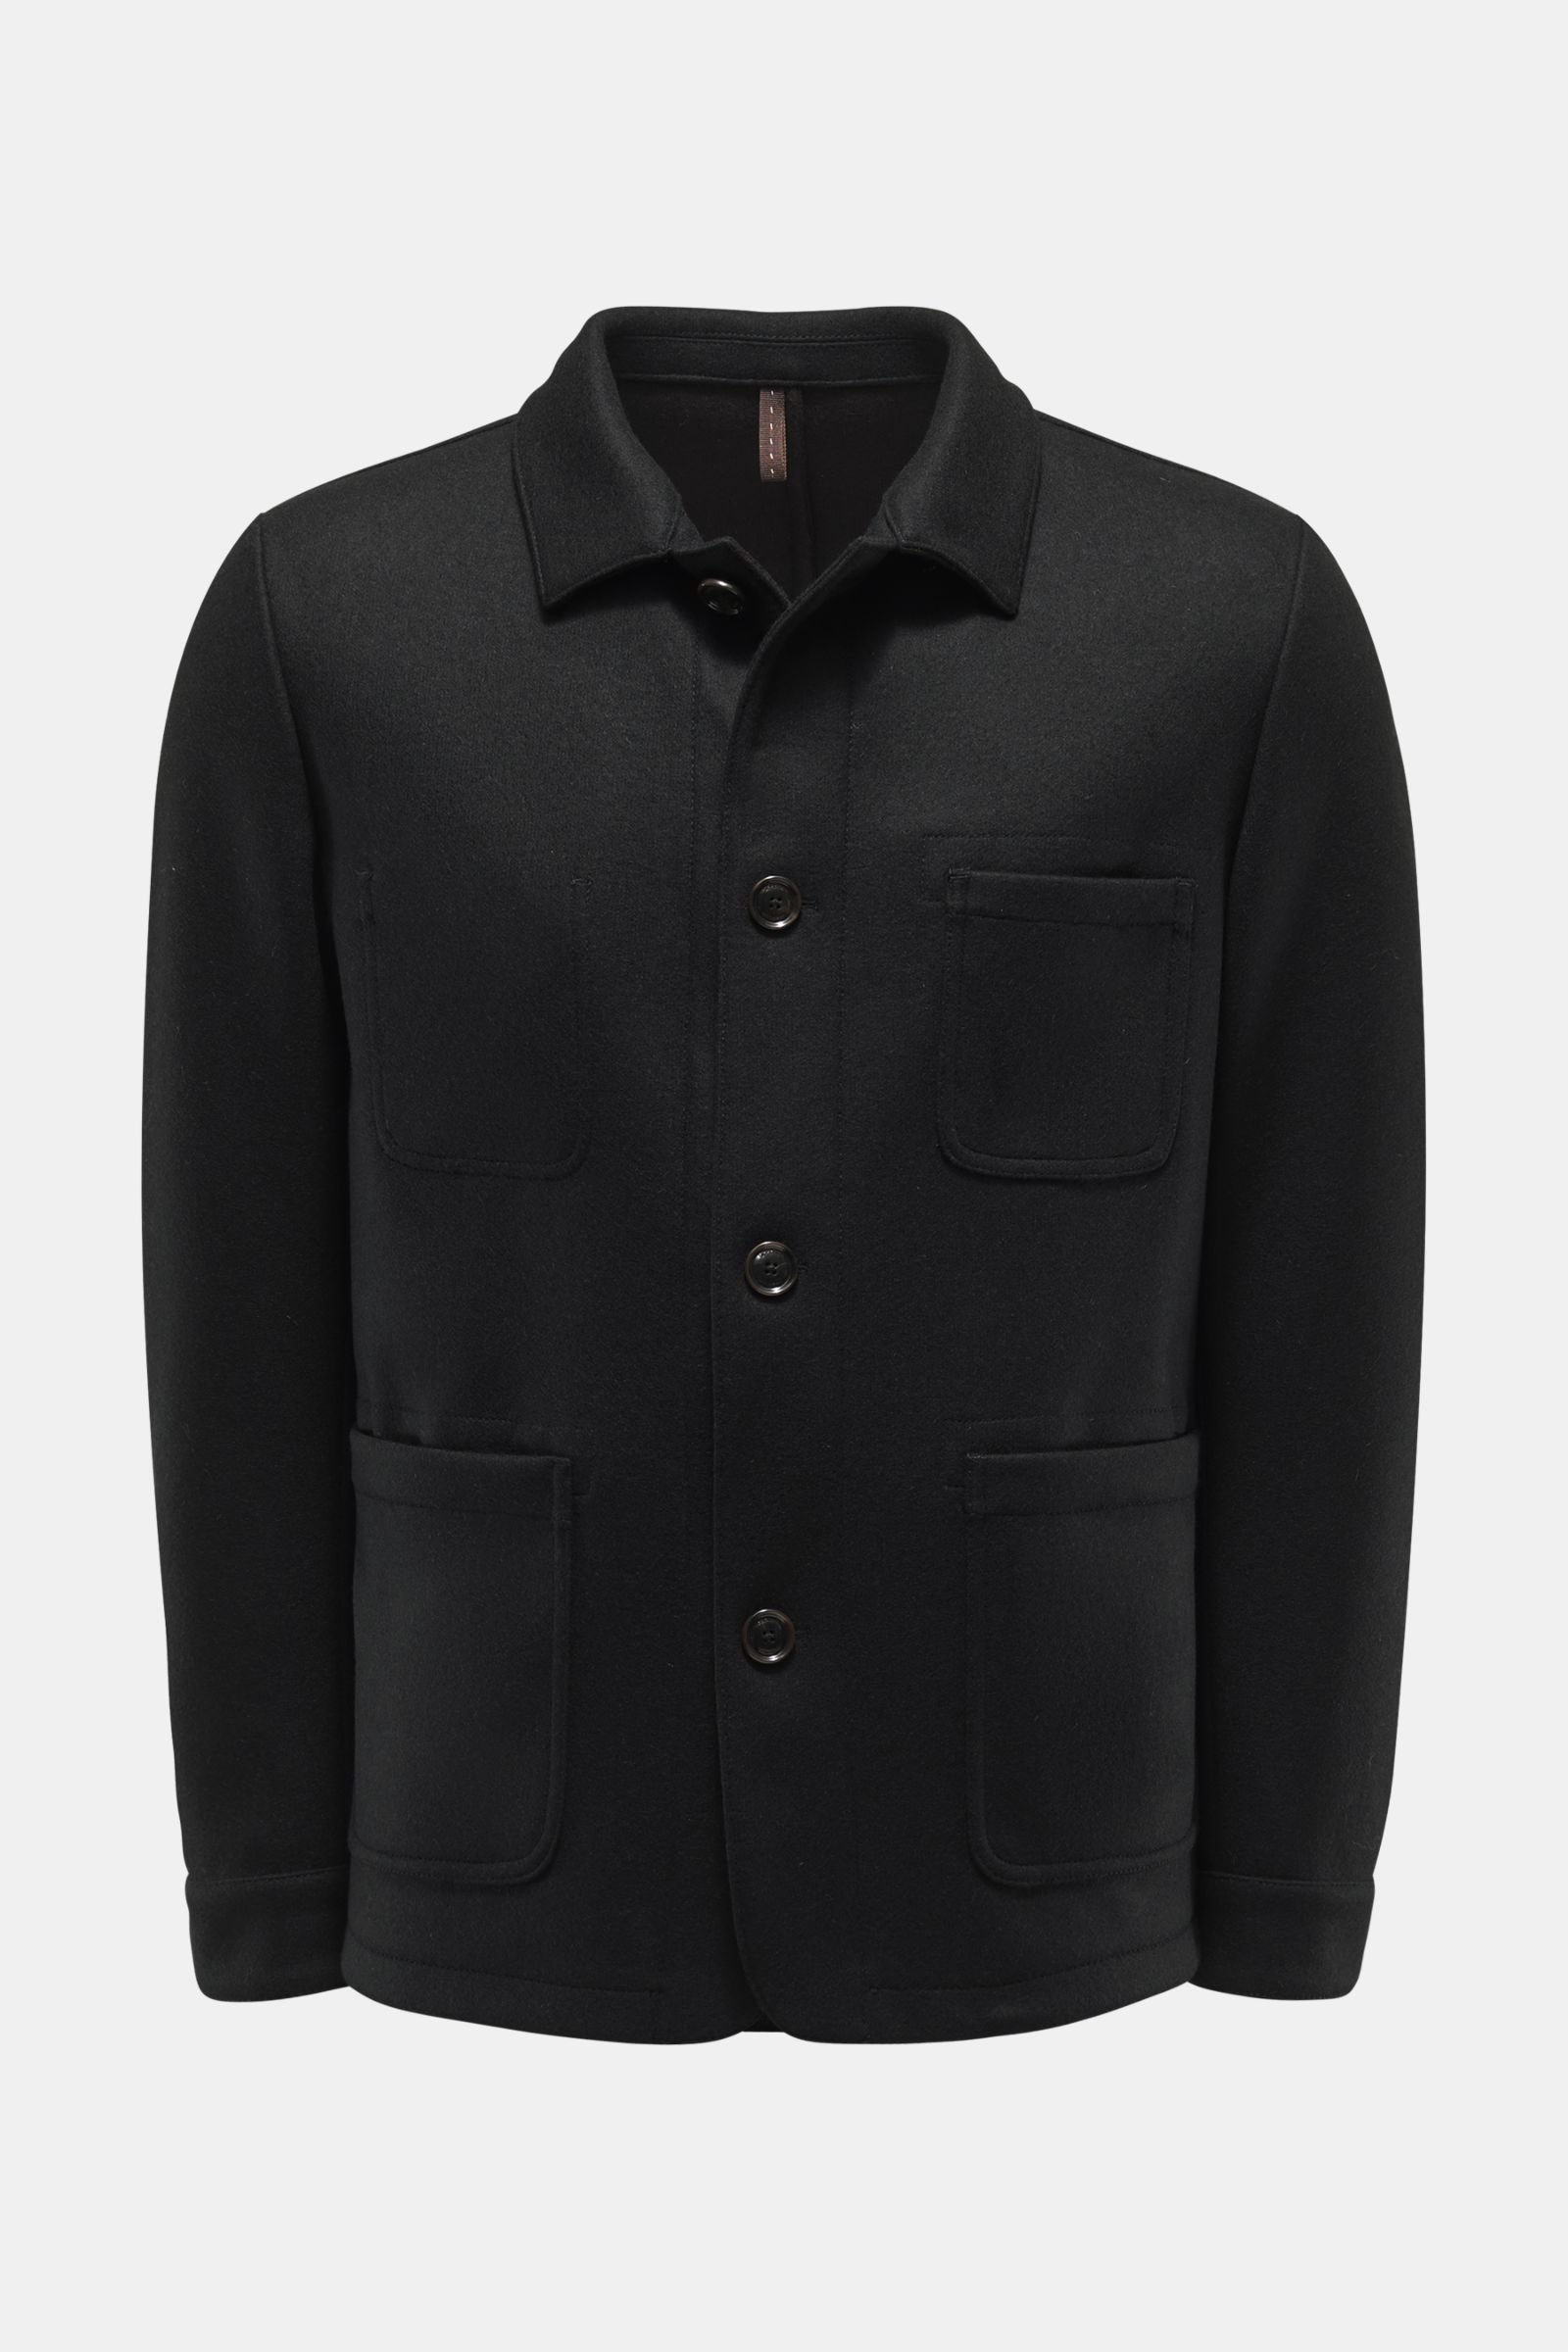 Jacket 'Ariano' black